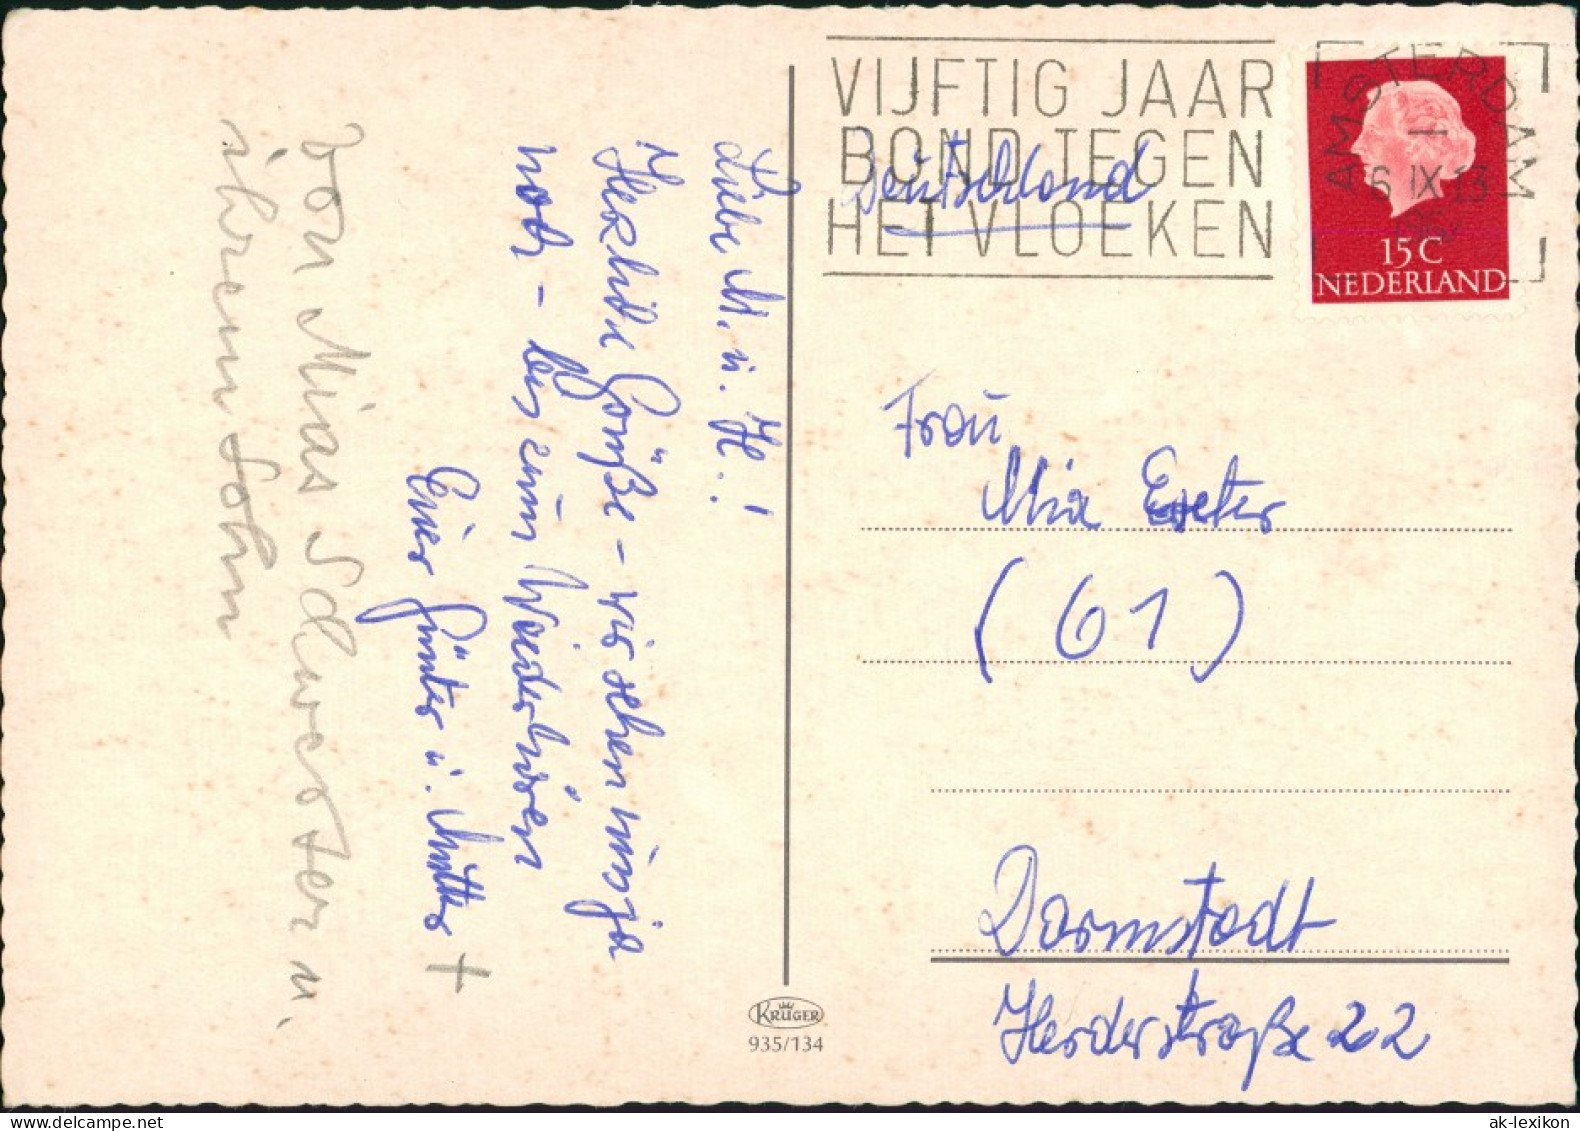 Postkaart Amsterdam Amsterdam Mehrbild-AK 4 Stadt-Ansichten 1965 - Amsterdam